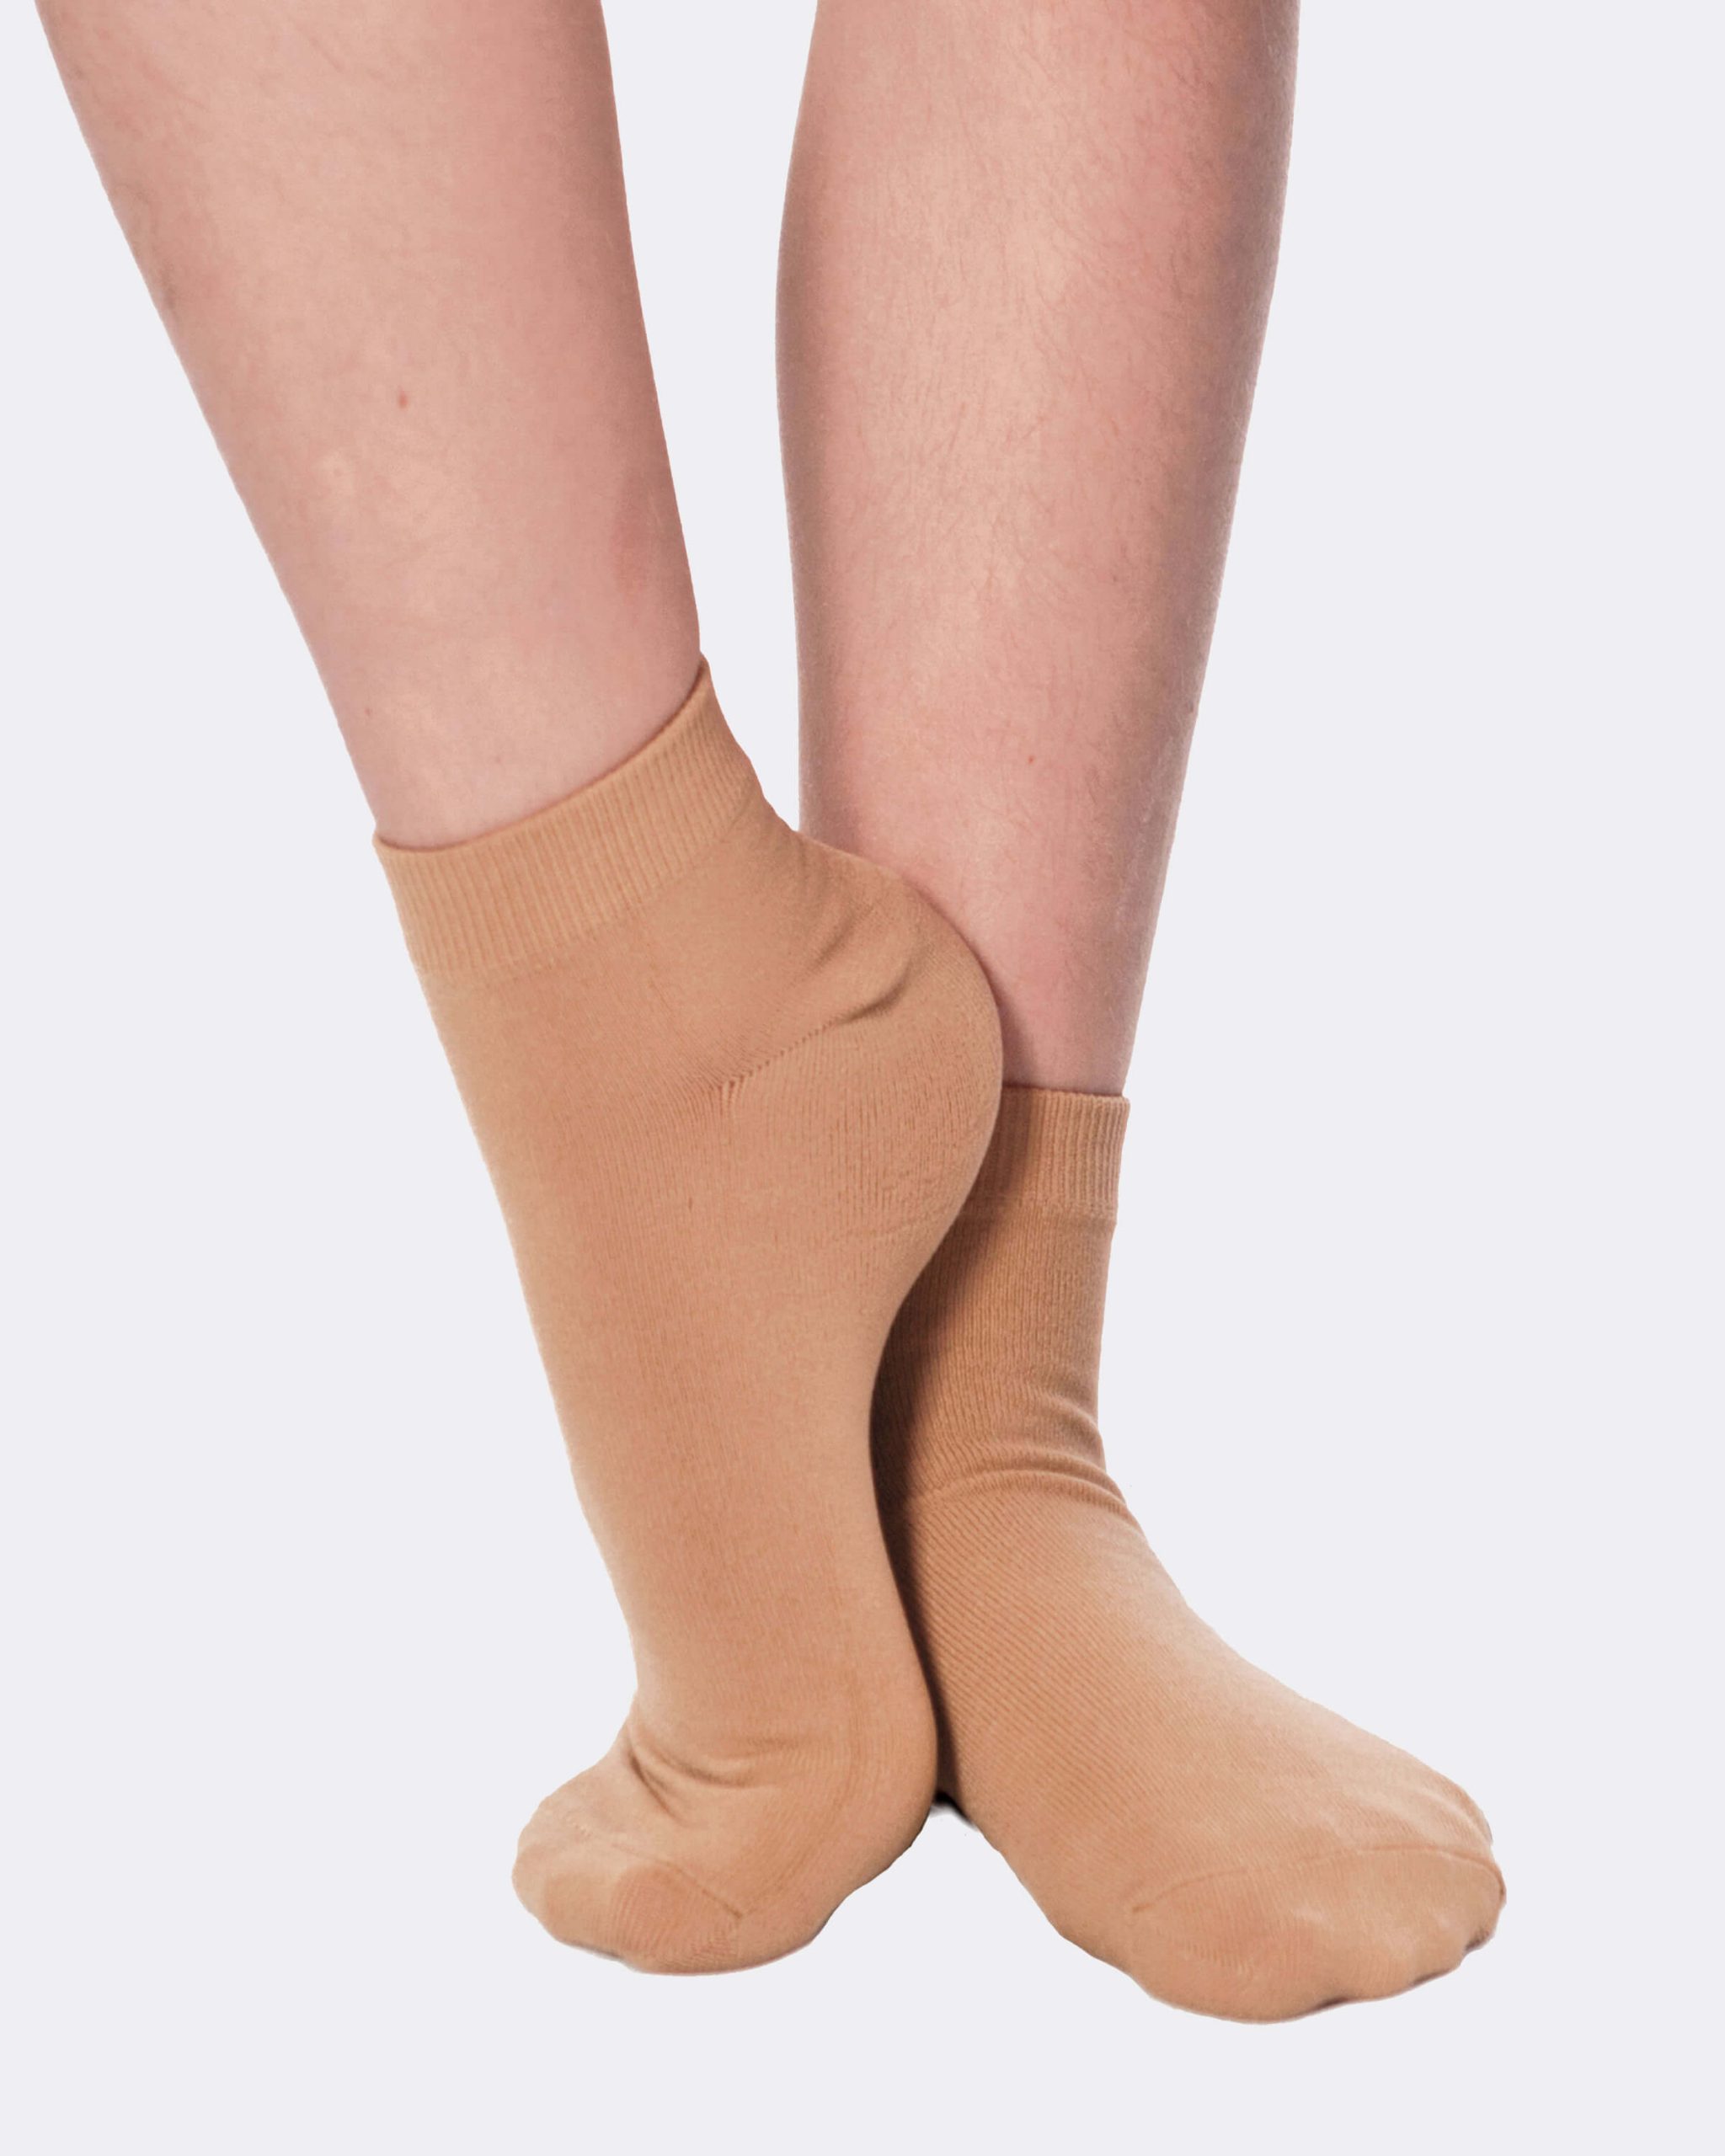 Buy DANCESOCKS brown dance socks shoe socks for carpet floors